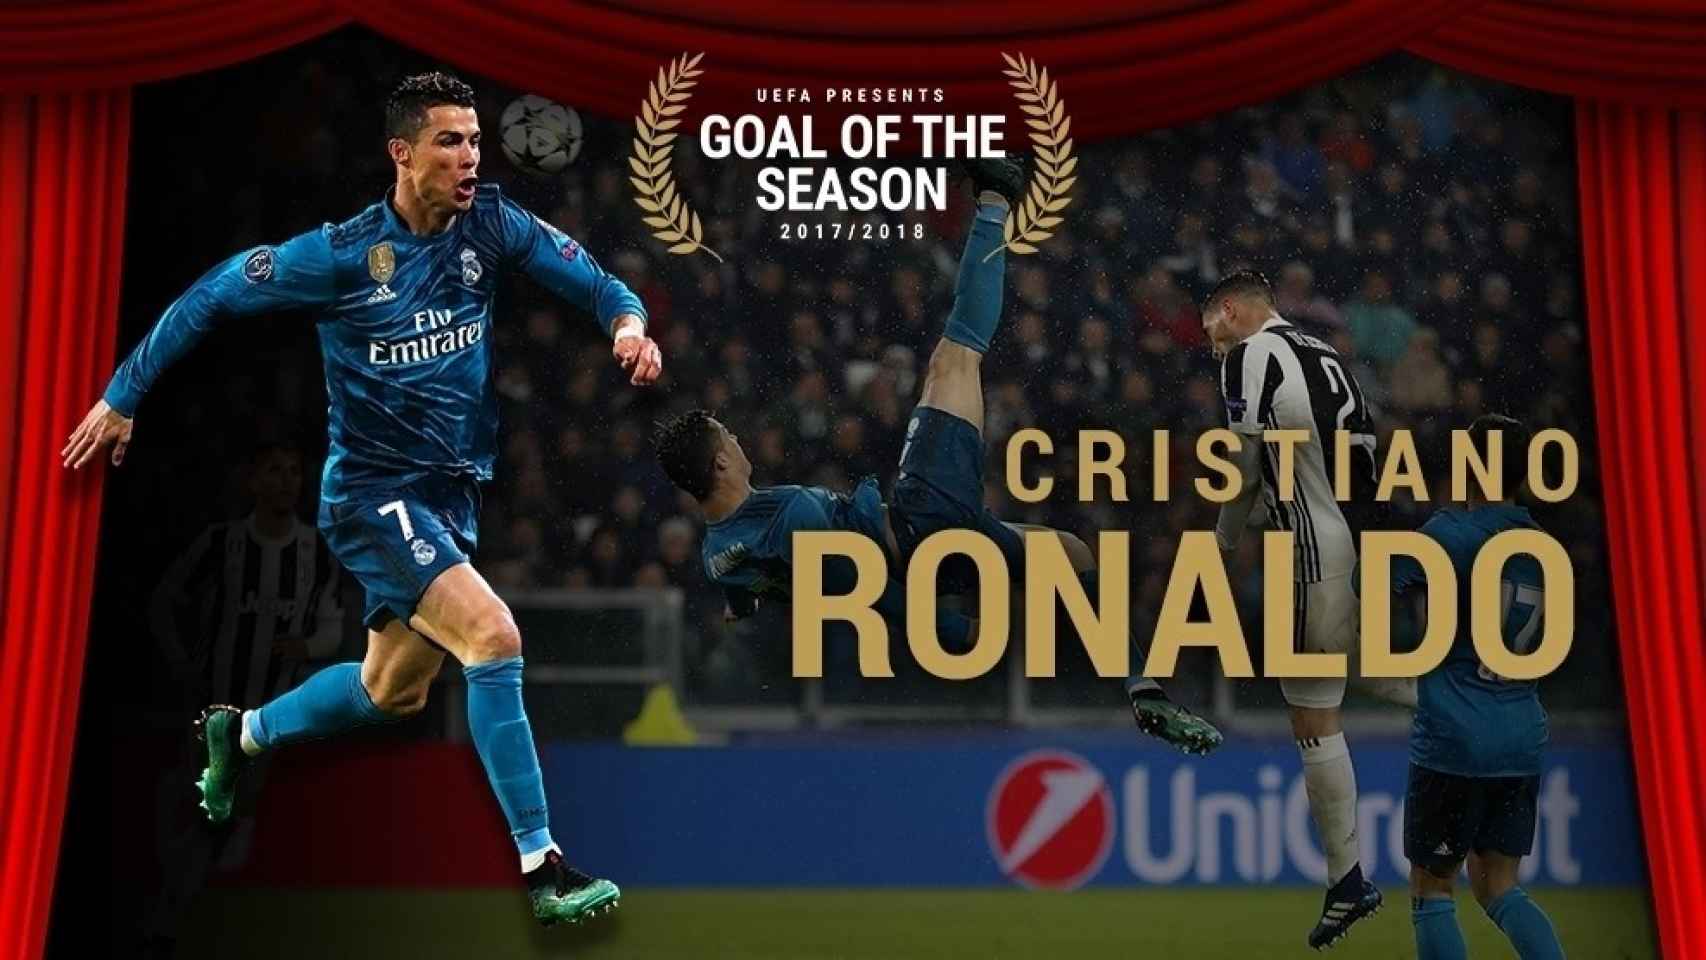 Cristiano Ronaldo, elegido gol de la temporada por la UEFA 2017/2018